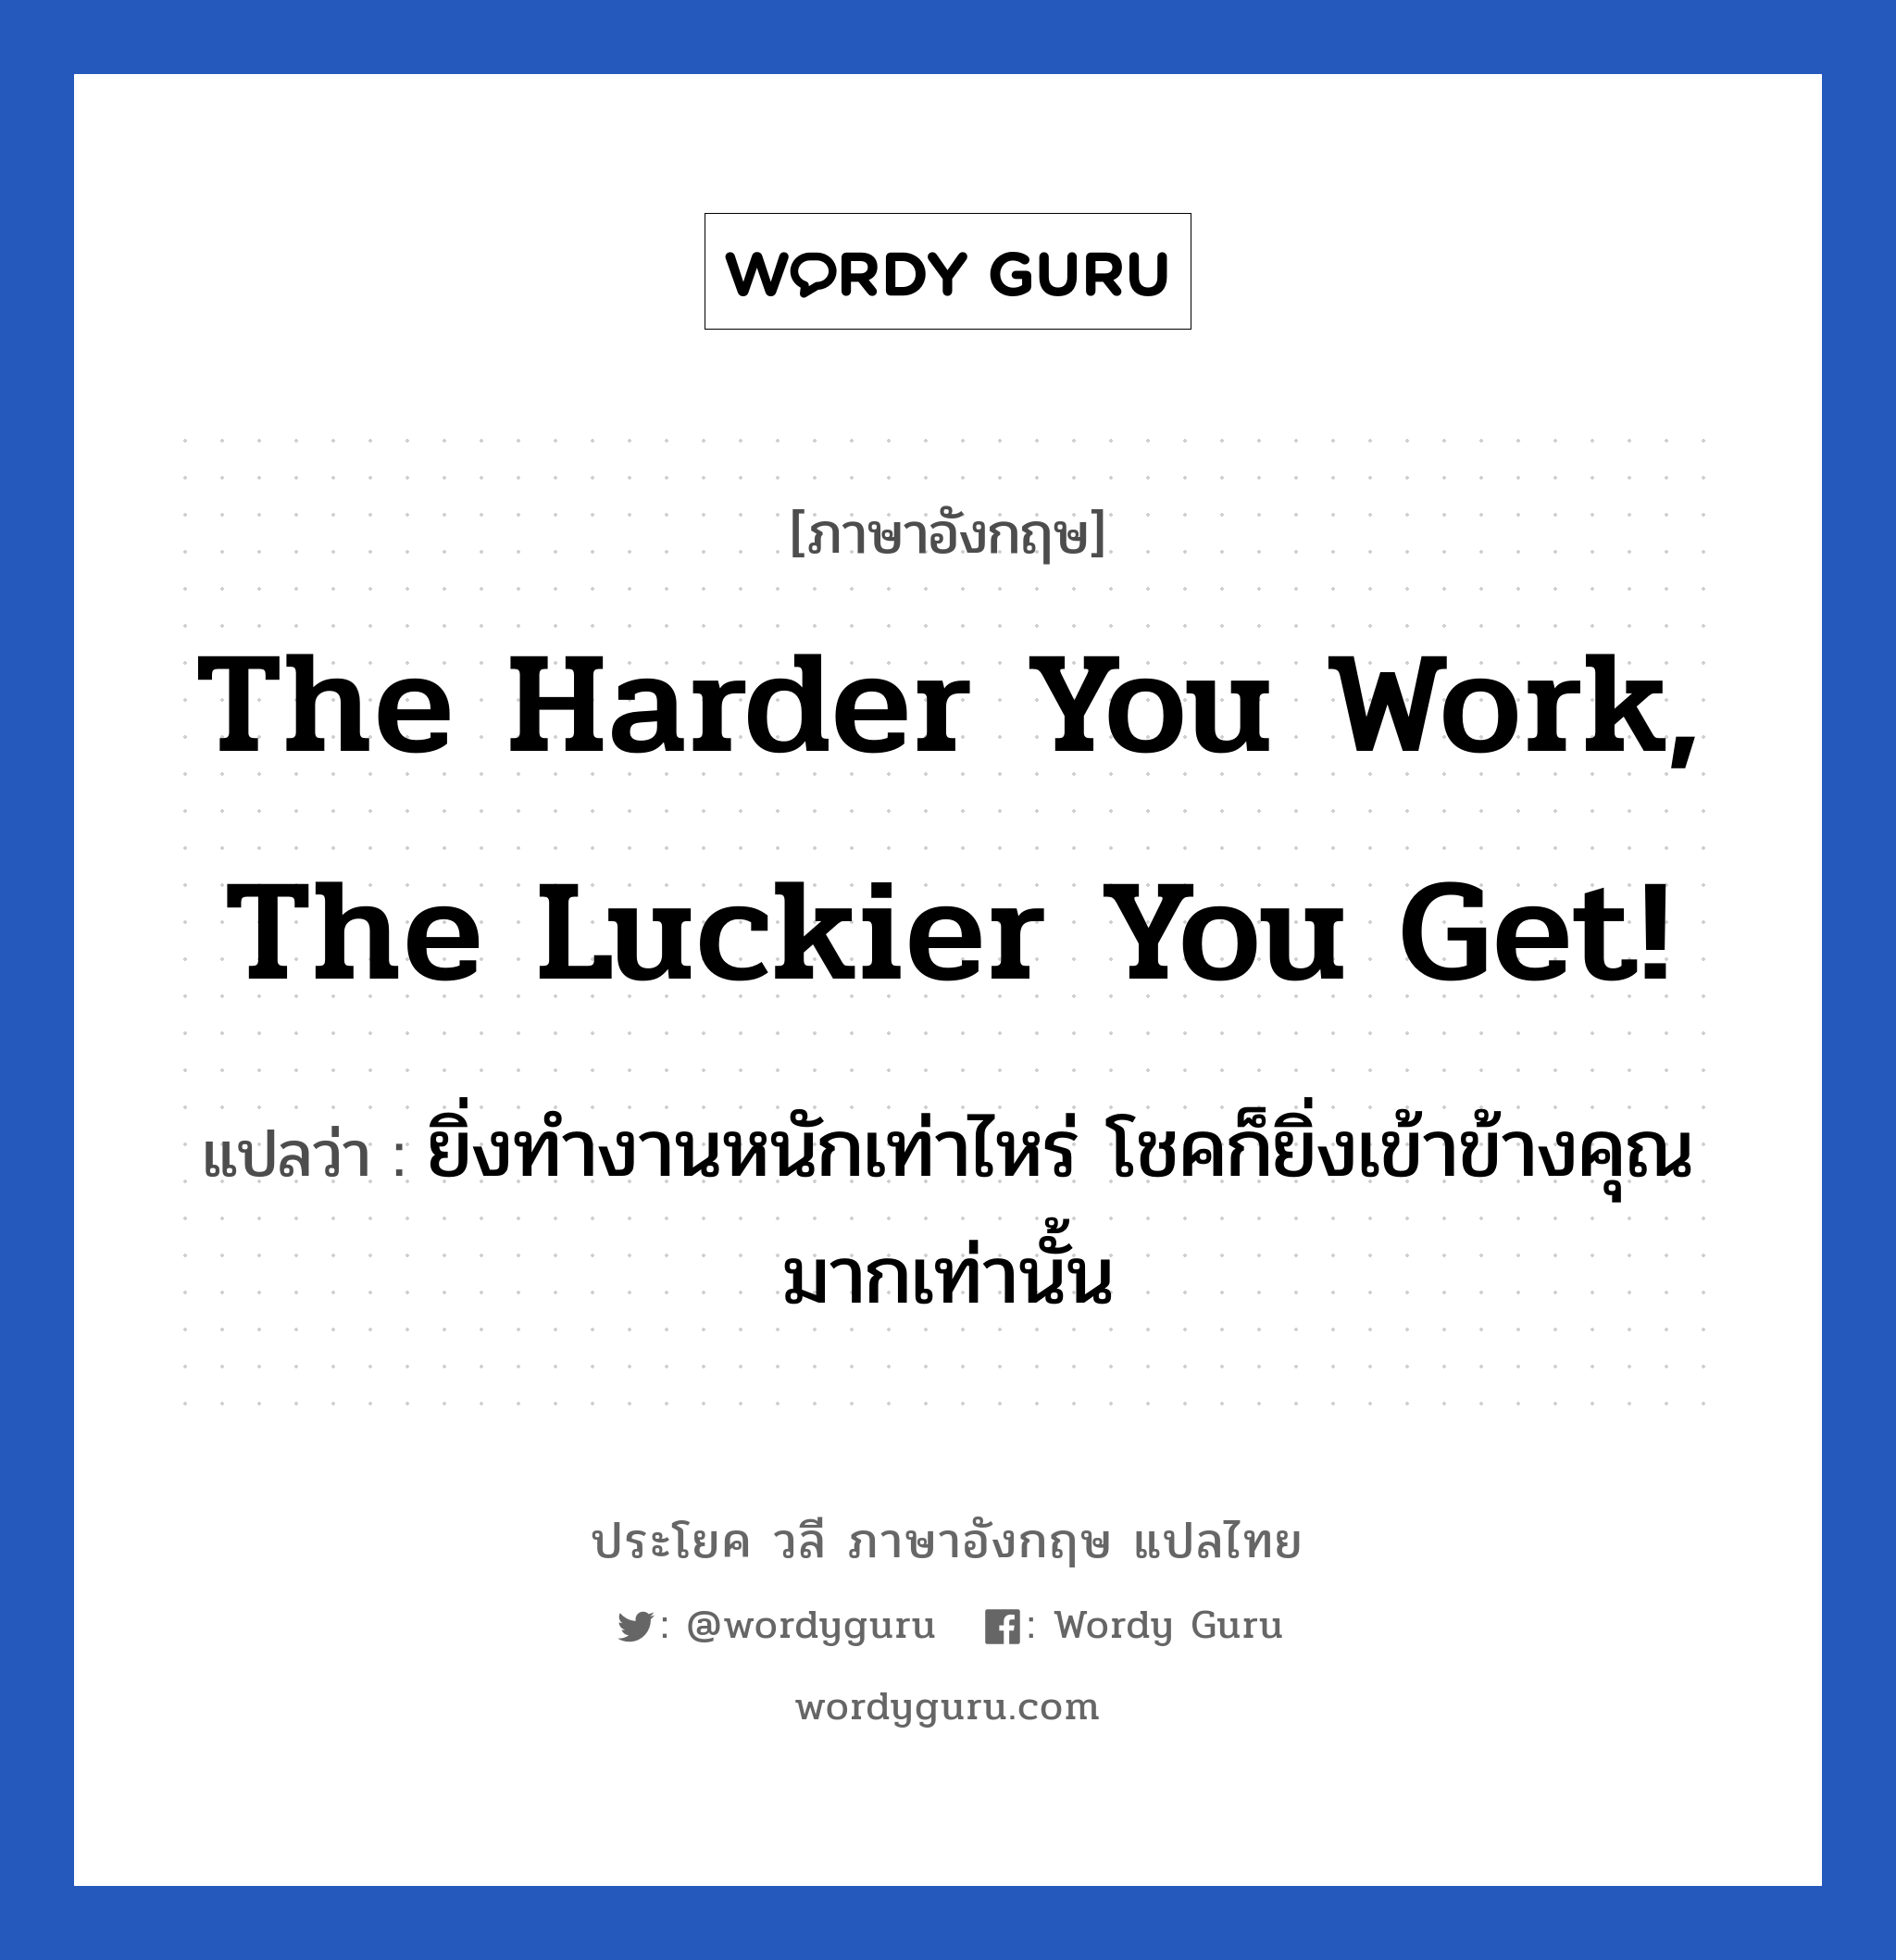 The harder you work, the luckier you get! แปลว่า?, วลีภาษาอังกฤษ The harder you work, the luckier you get! แปลว่า ยิ่งทำงานหนักเท่าไหร่ โชคก็ยิ่งเข้าข้างคุณมากเท่านั้น หมวด ในที่ทำงาน